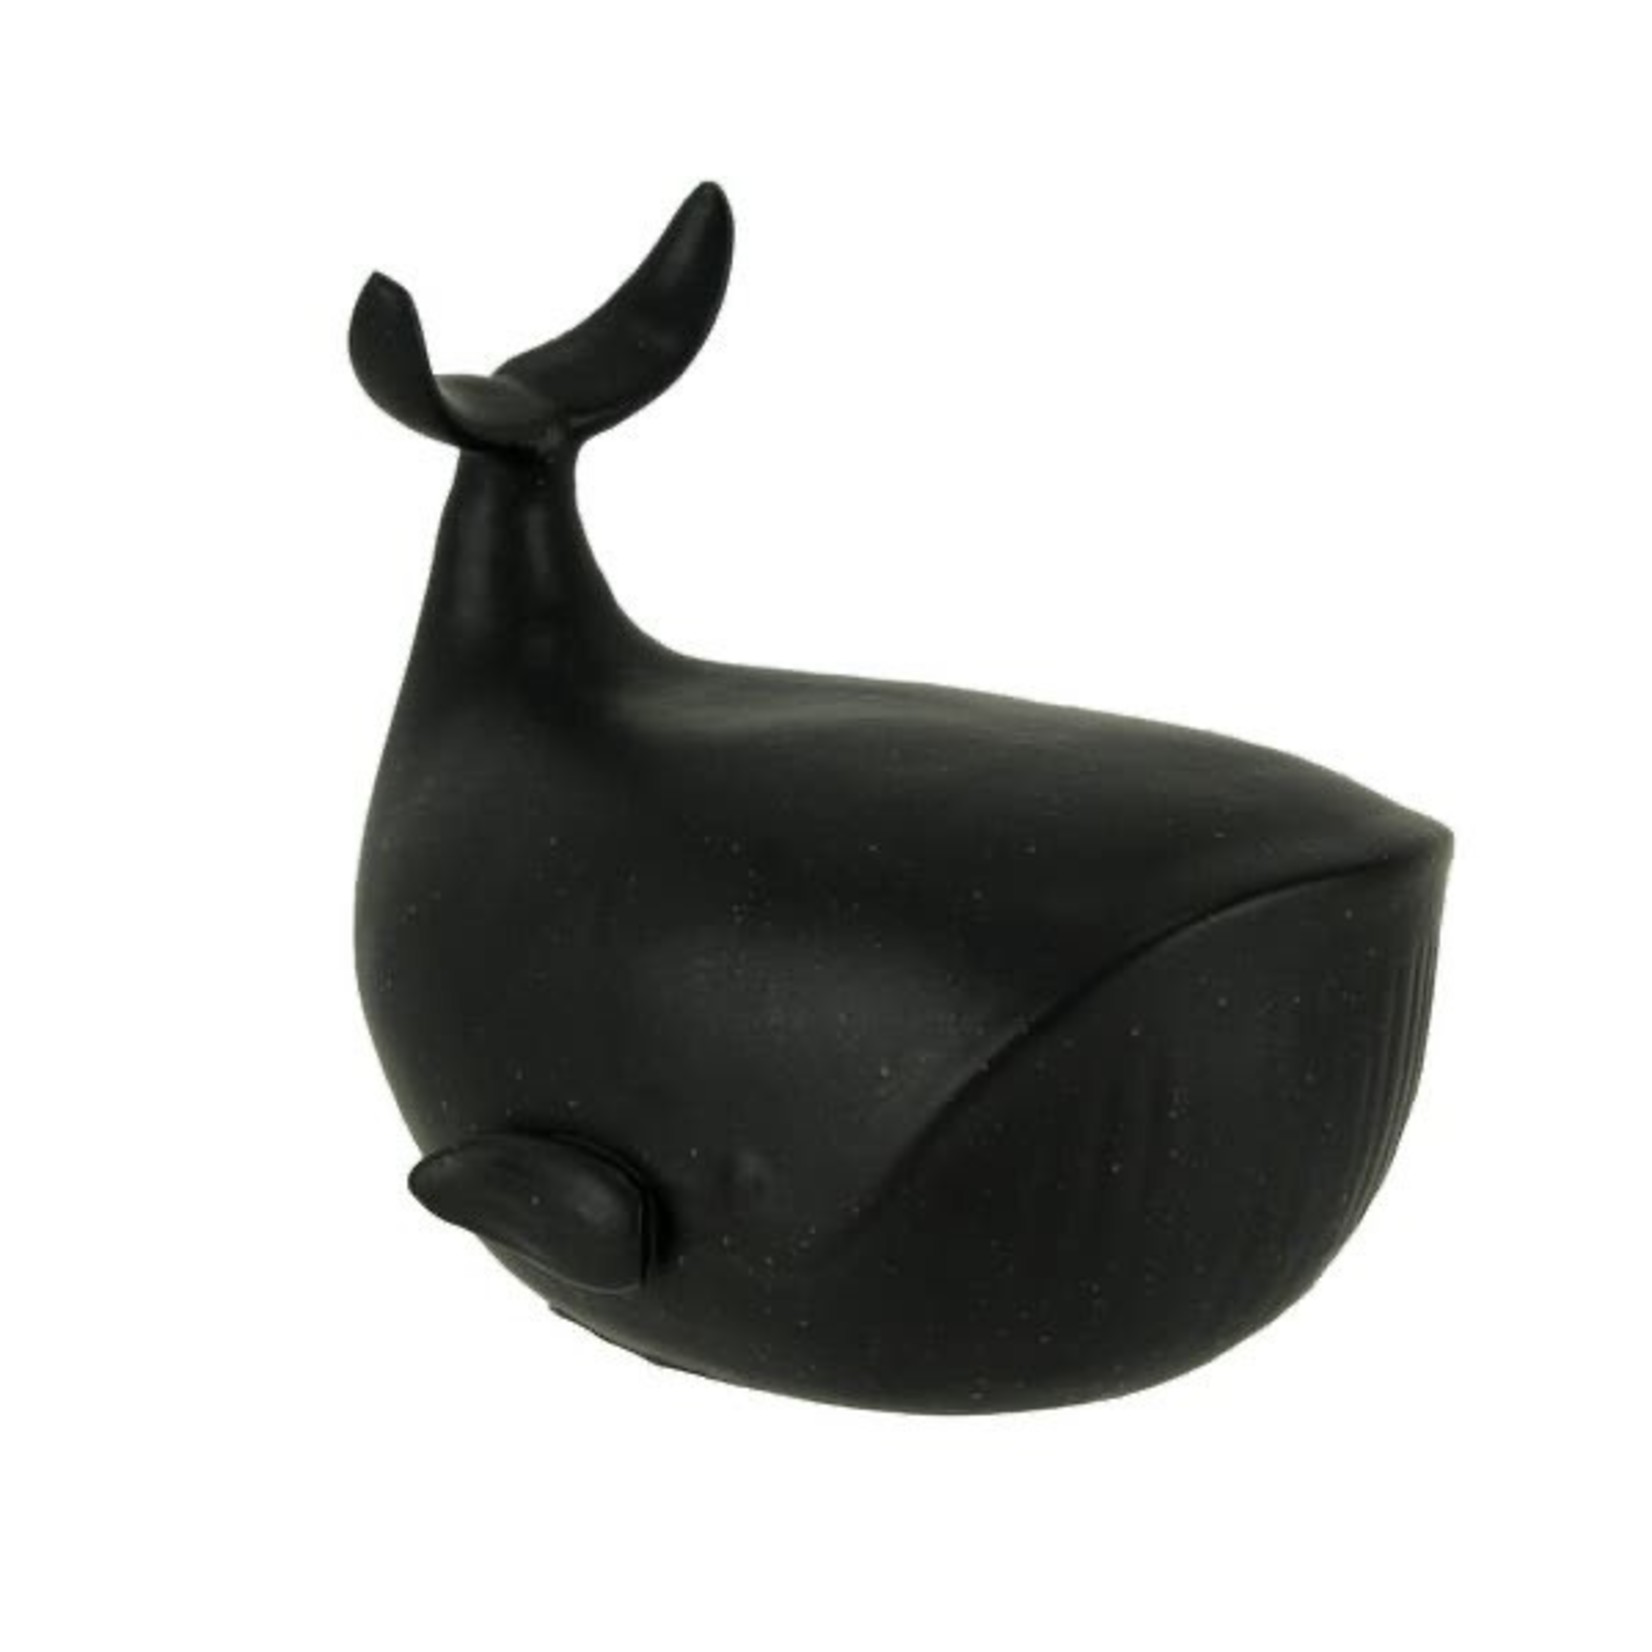 Creative Co-op Black Ceramic Whale Decor Small